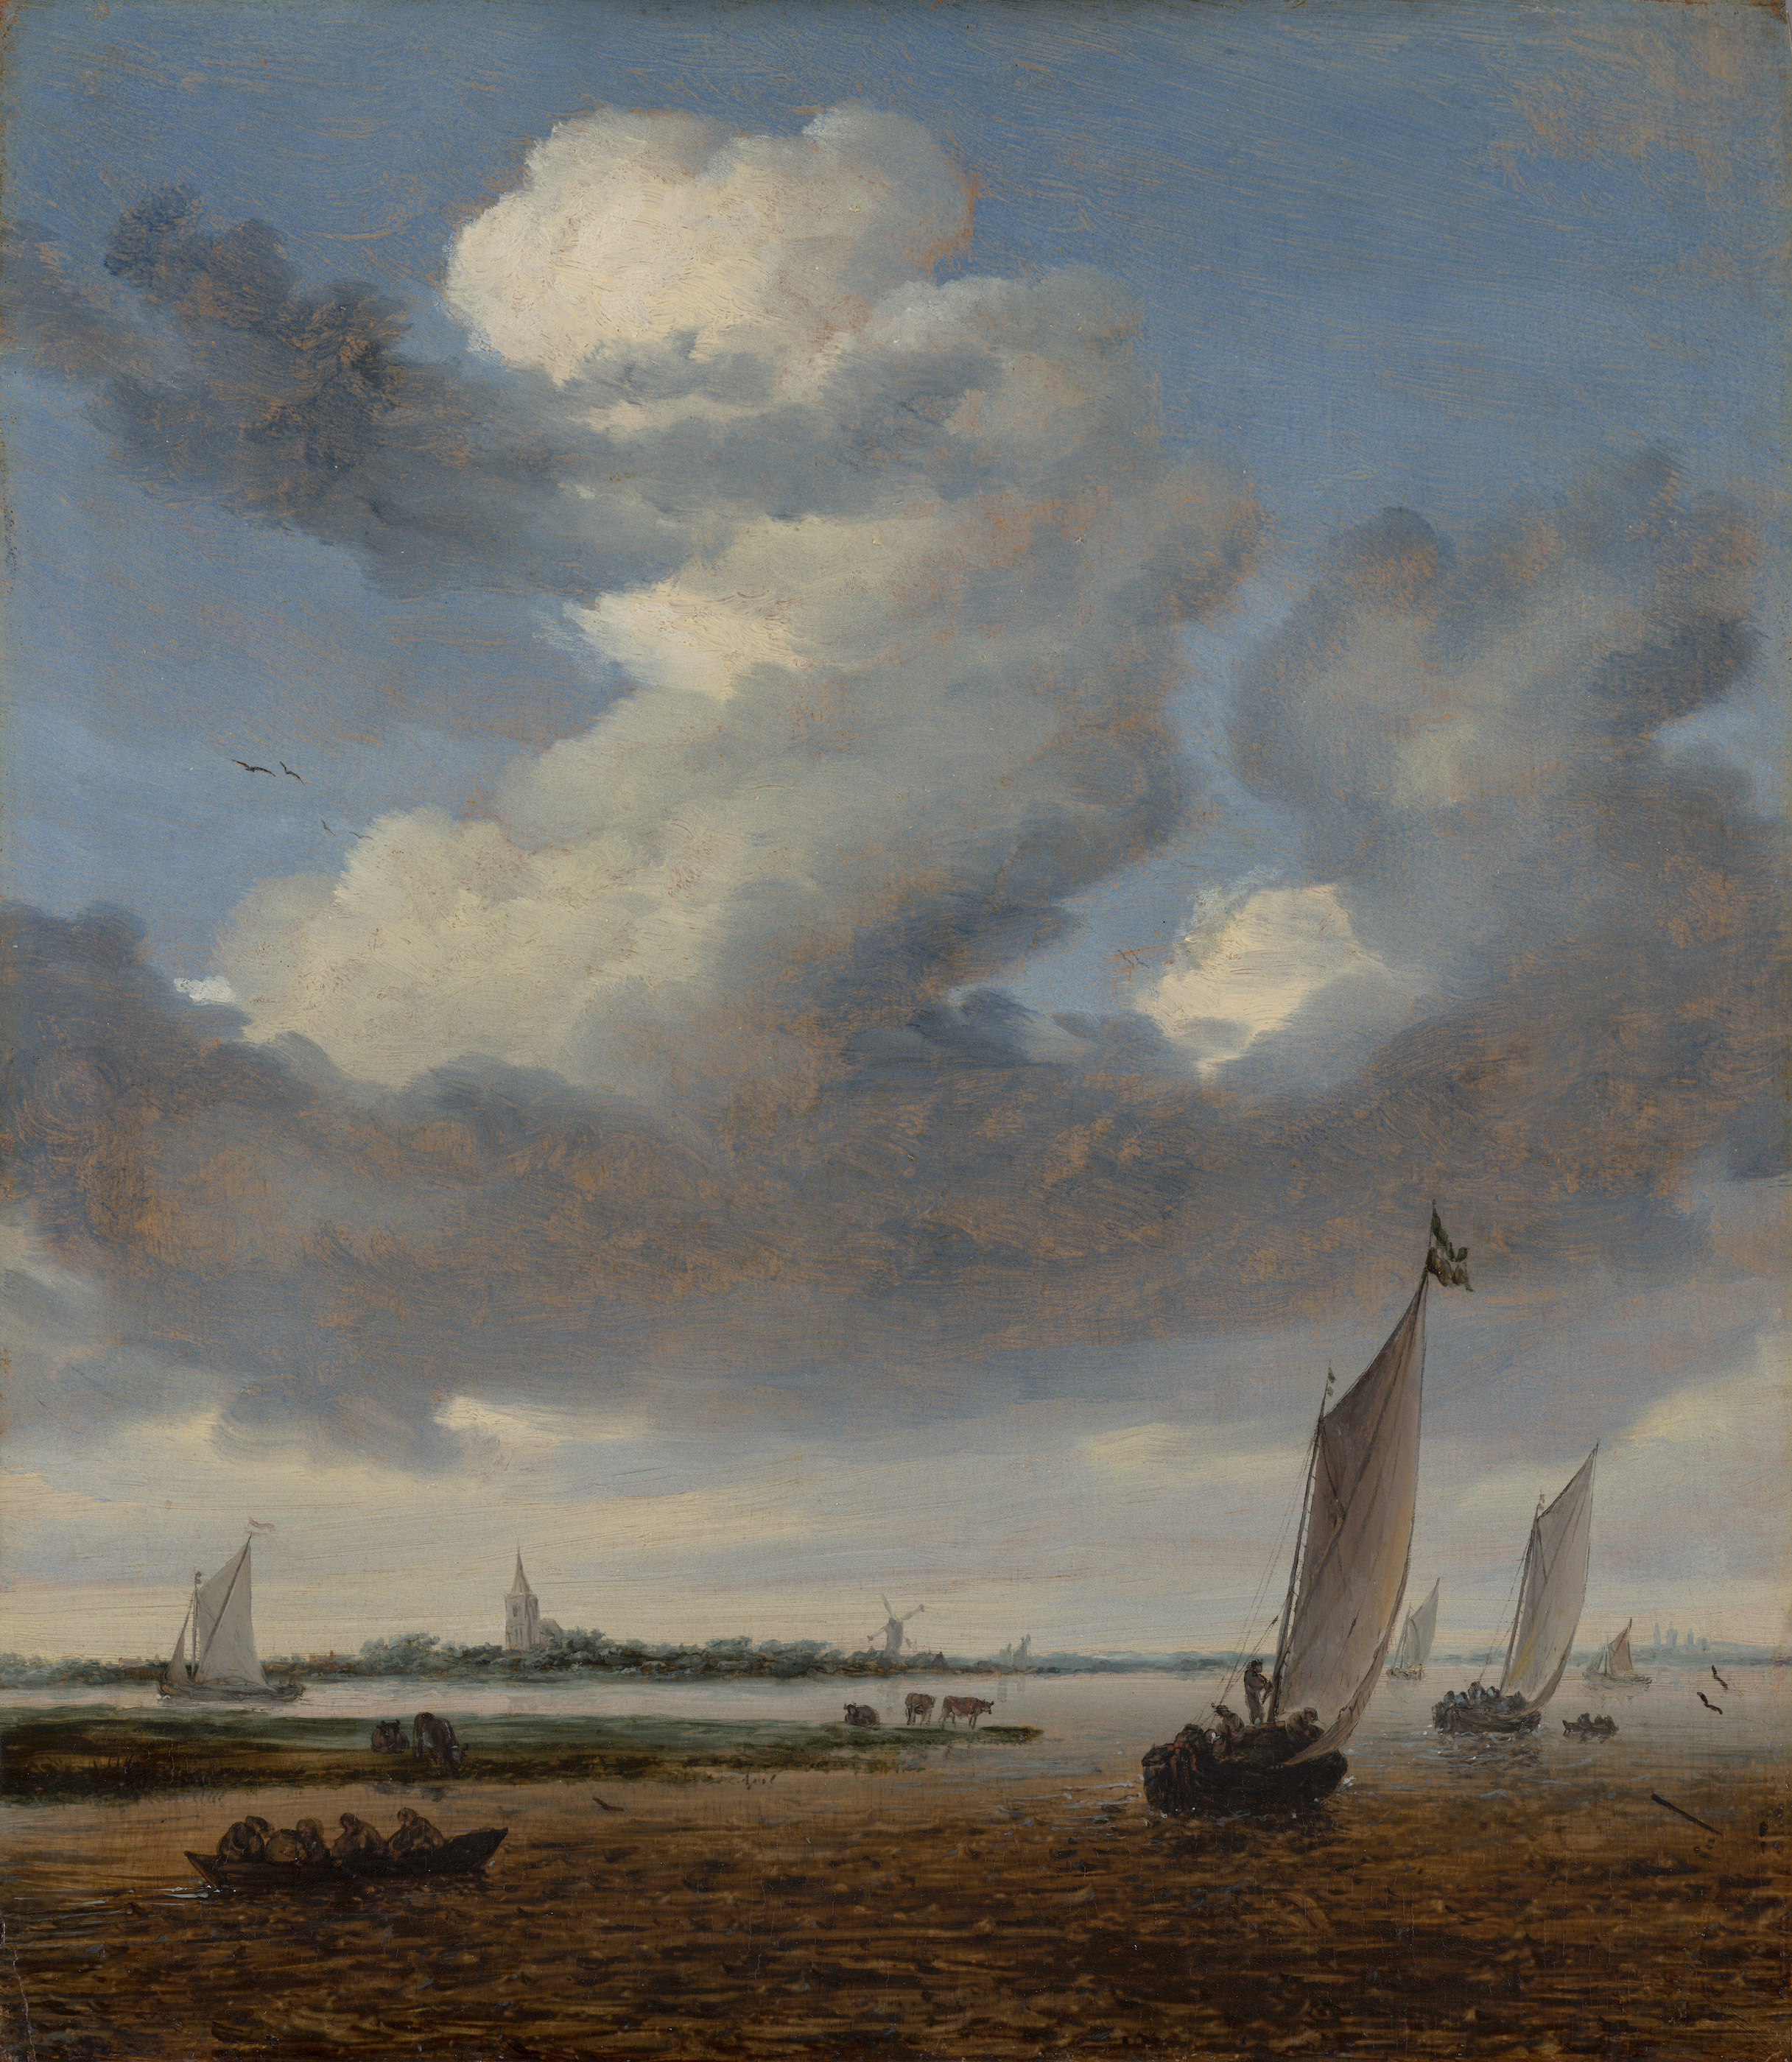 View of Beverwijk from the Wijkermeer by Salomon van Ruysdael - 1661 - 41 x 35.5 cm Mauritshuis, The Hague